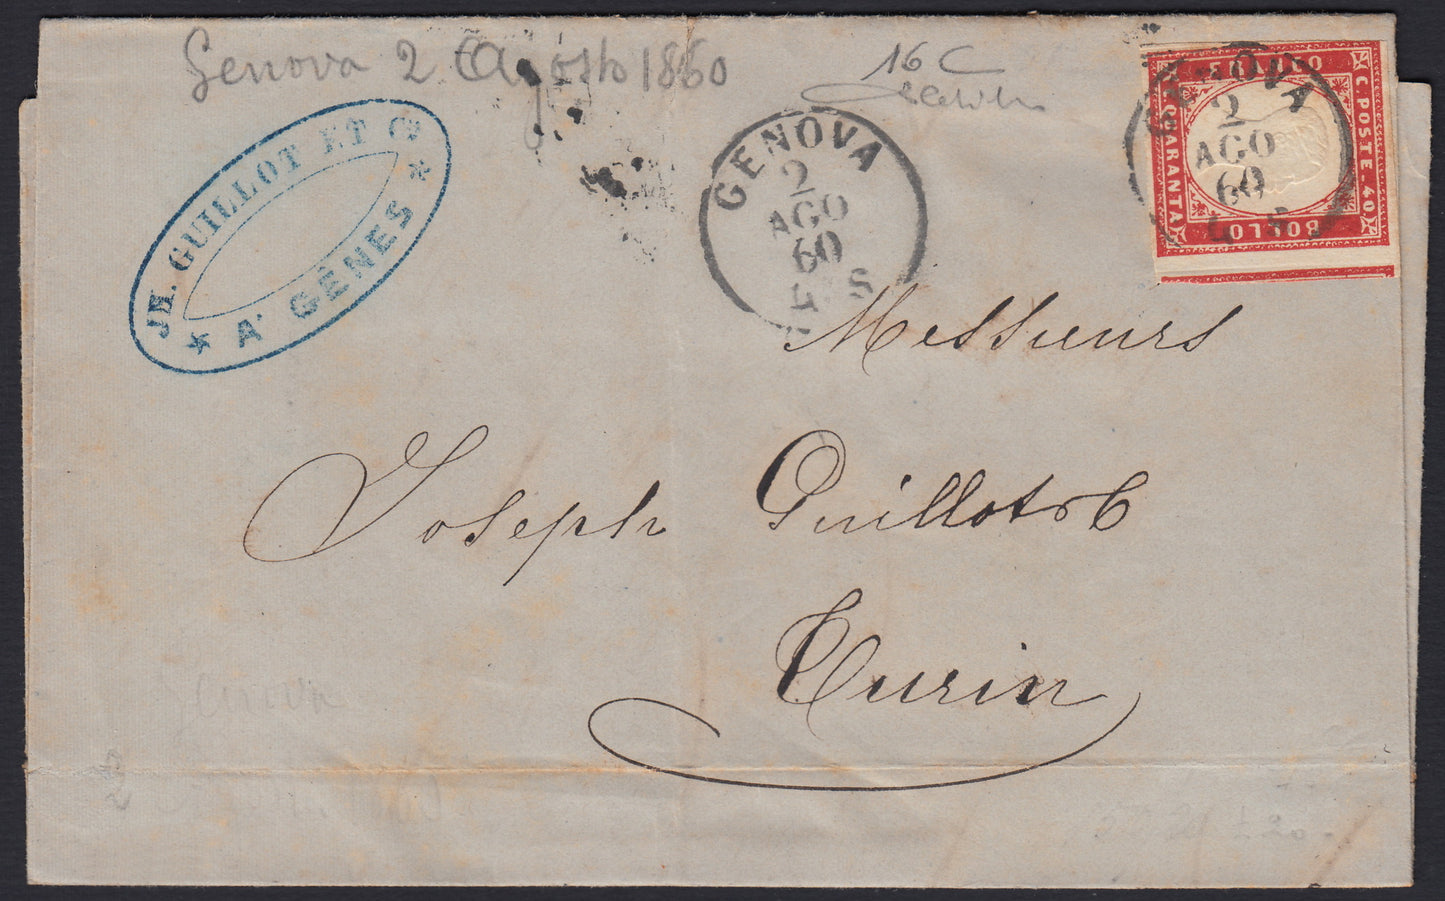 258 - 1860 - IV emissione, Lettera spedita da Genova per Torino 2/8/60 affrancata con c. 40 rosso tiratura 1860 (16C)